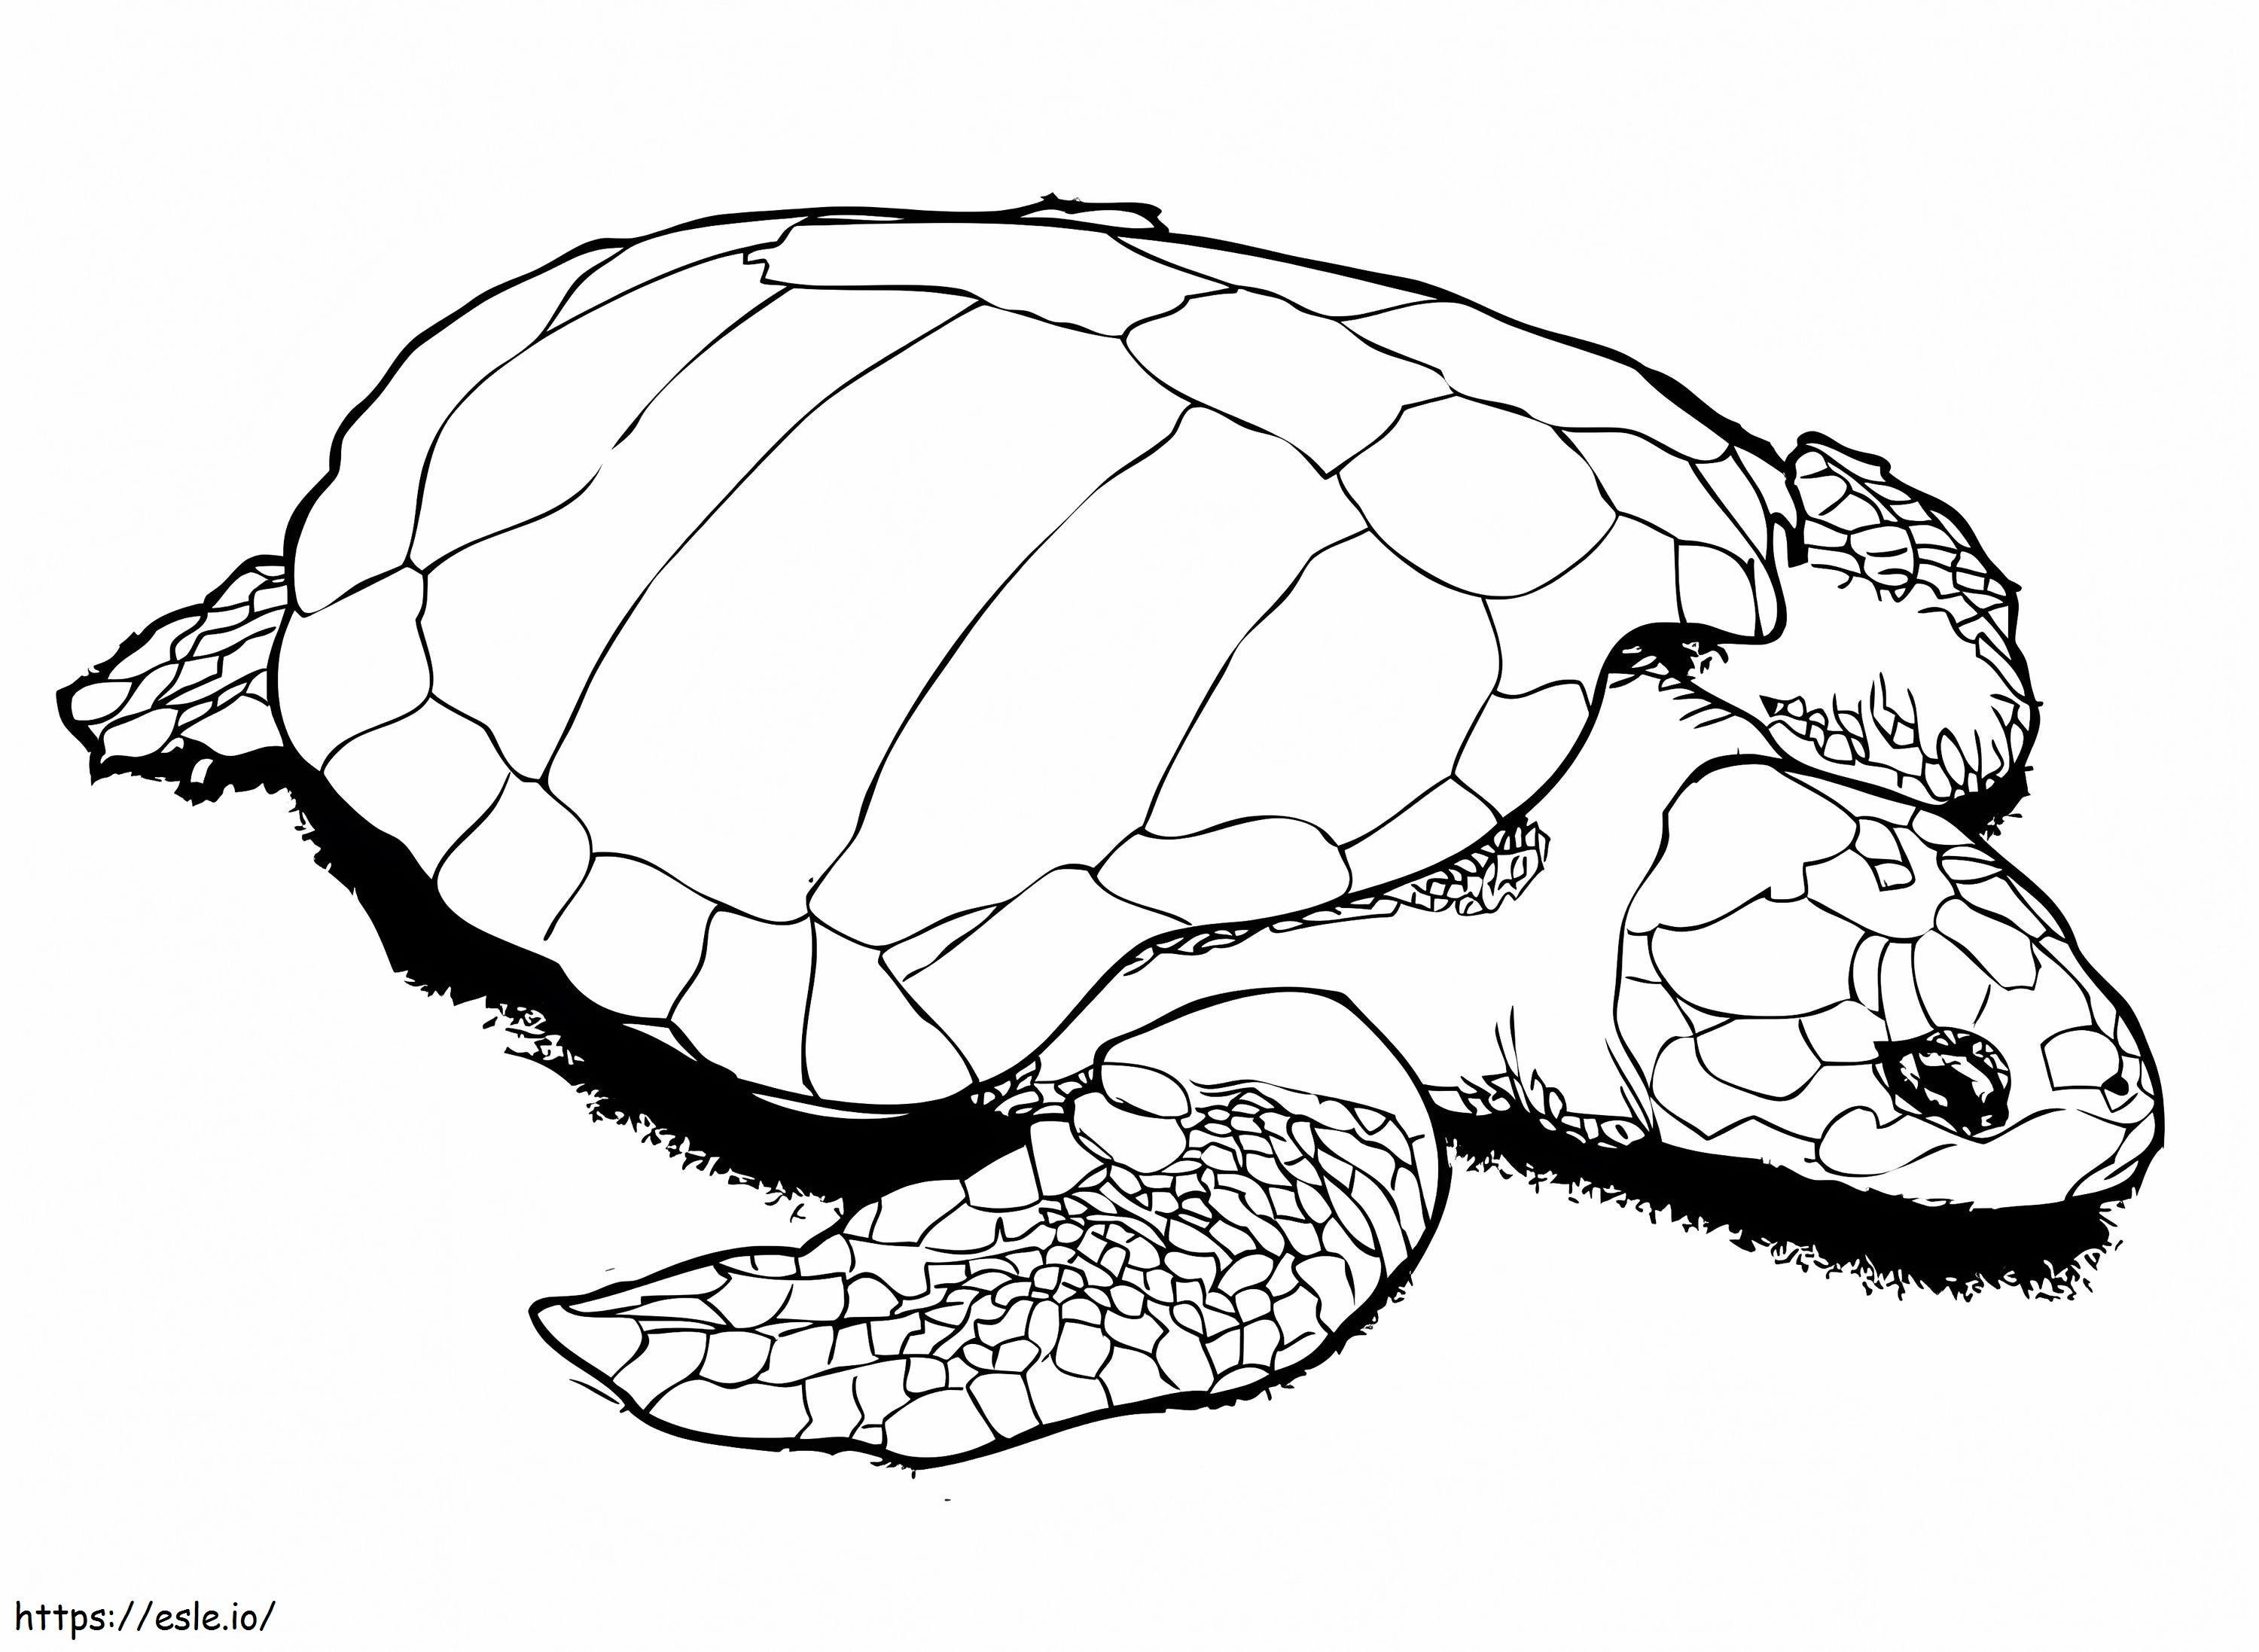 Olive Ridley Deniz Kaplumbağası boyama